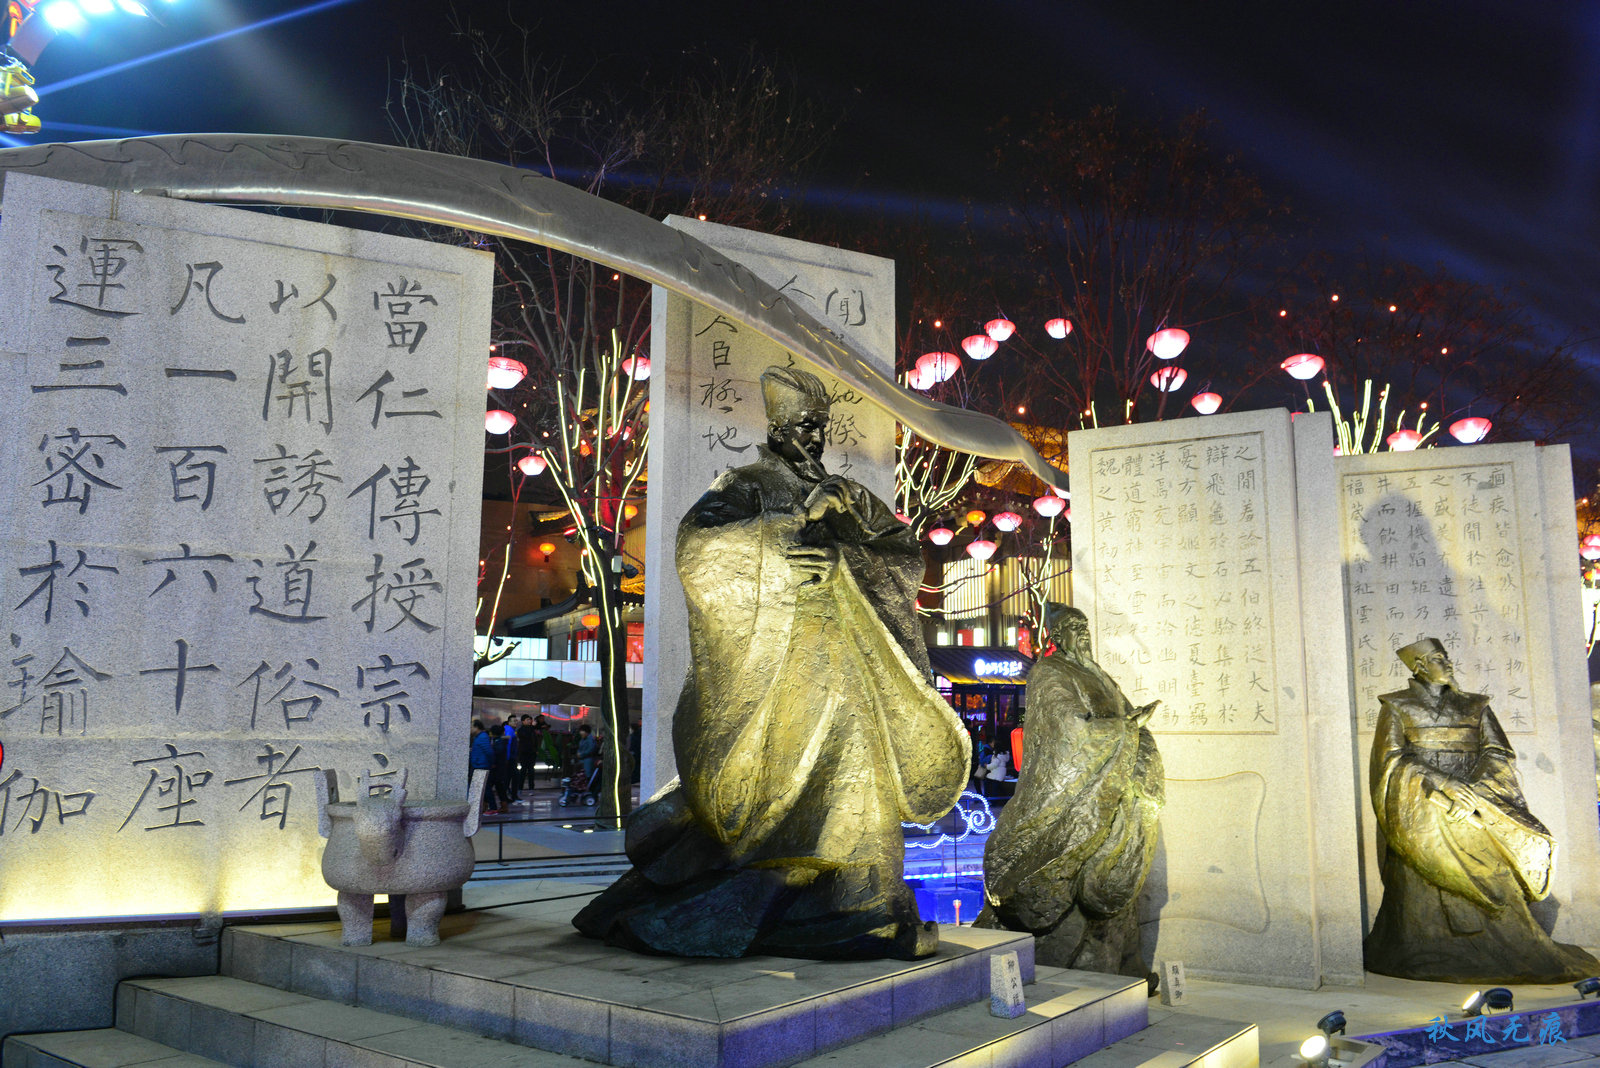 个个大唐文豪的雕塑,提醒沉醉西安小年的人们想象长安唐时年韵的美好